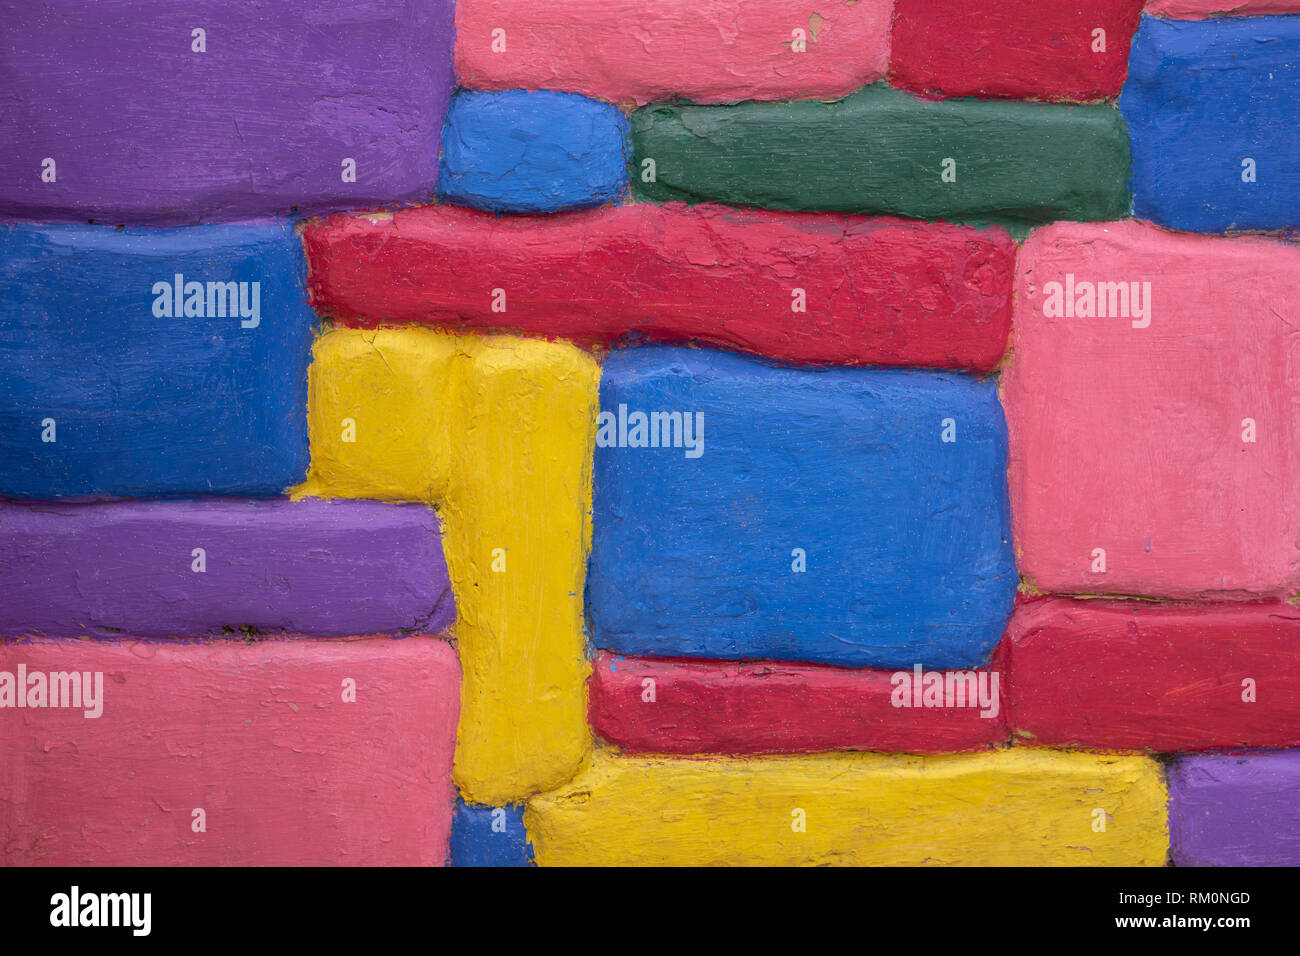 Farbenfrohe Kunst Hintergrund. Die Wand in Blau, Blau, Gelb, Pink, Purpur, Grün, Rot, Violett Farben bunte Steine bemalt Stockfoto